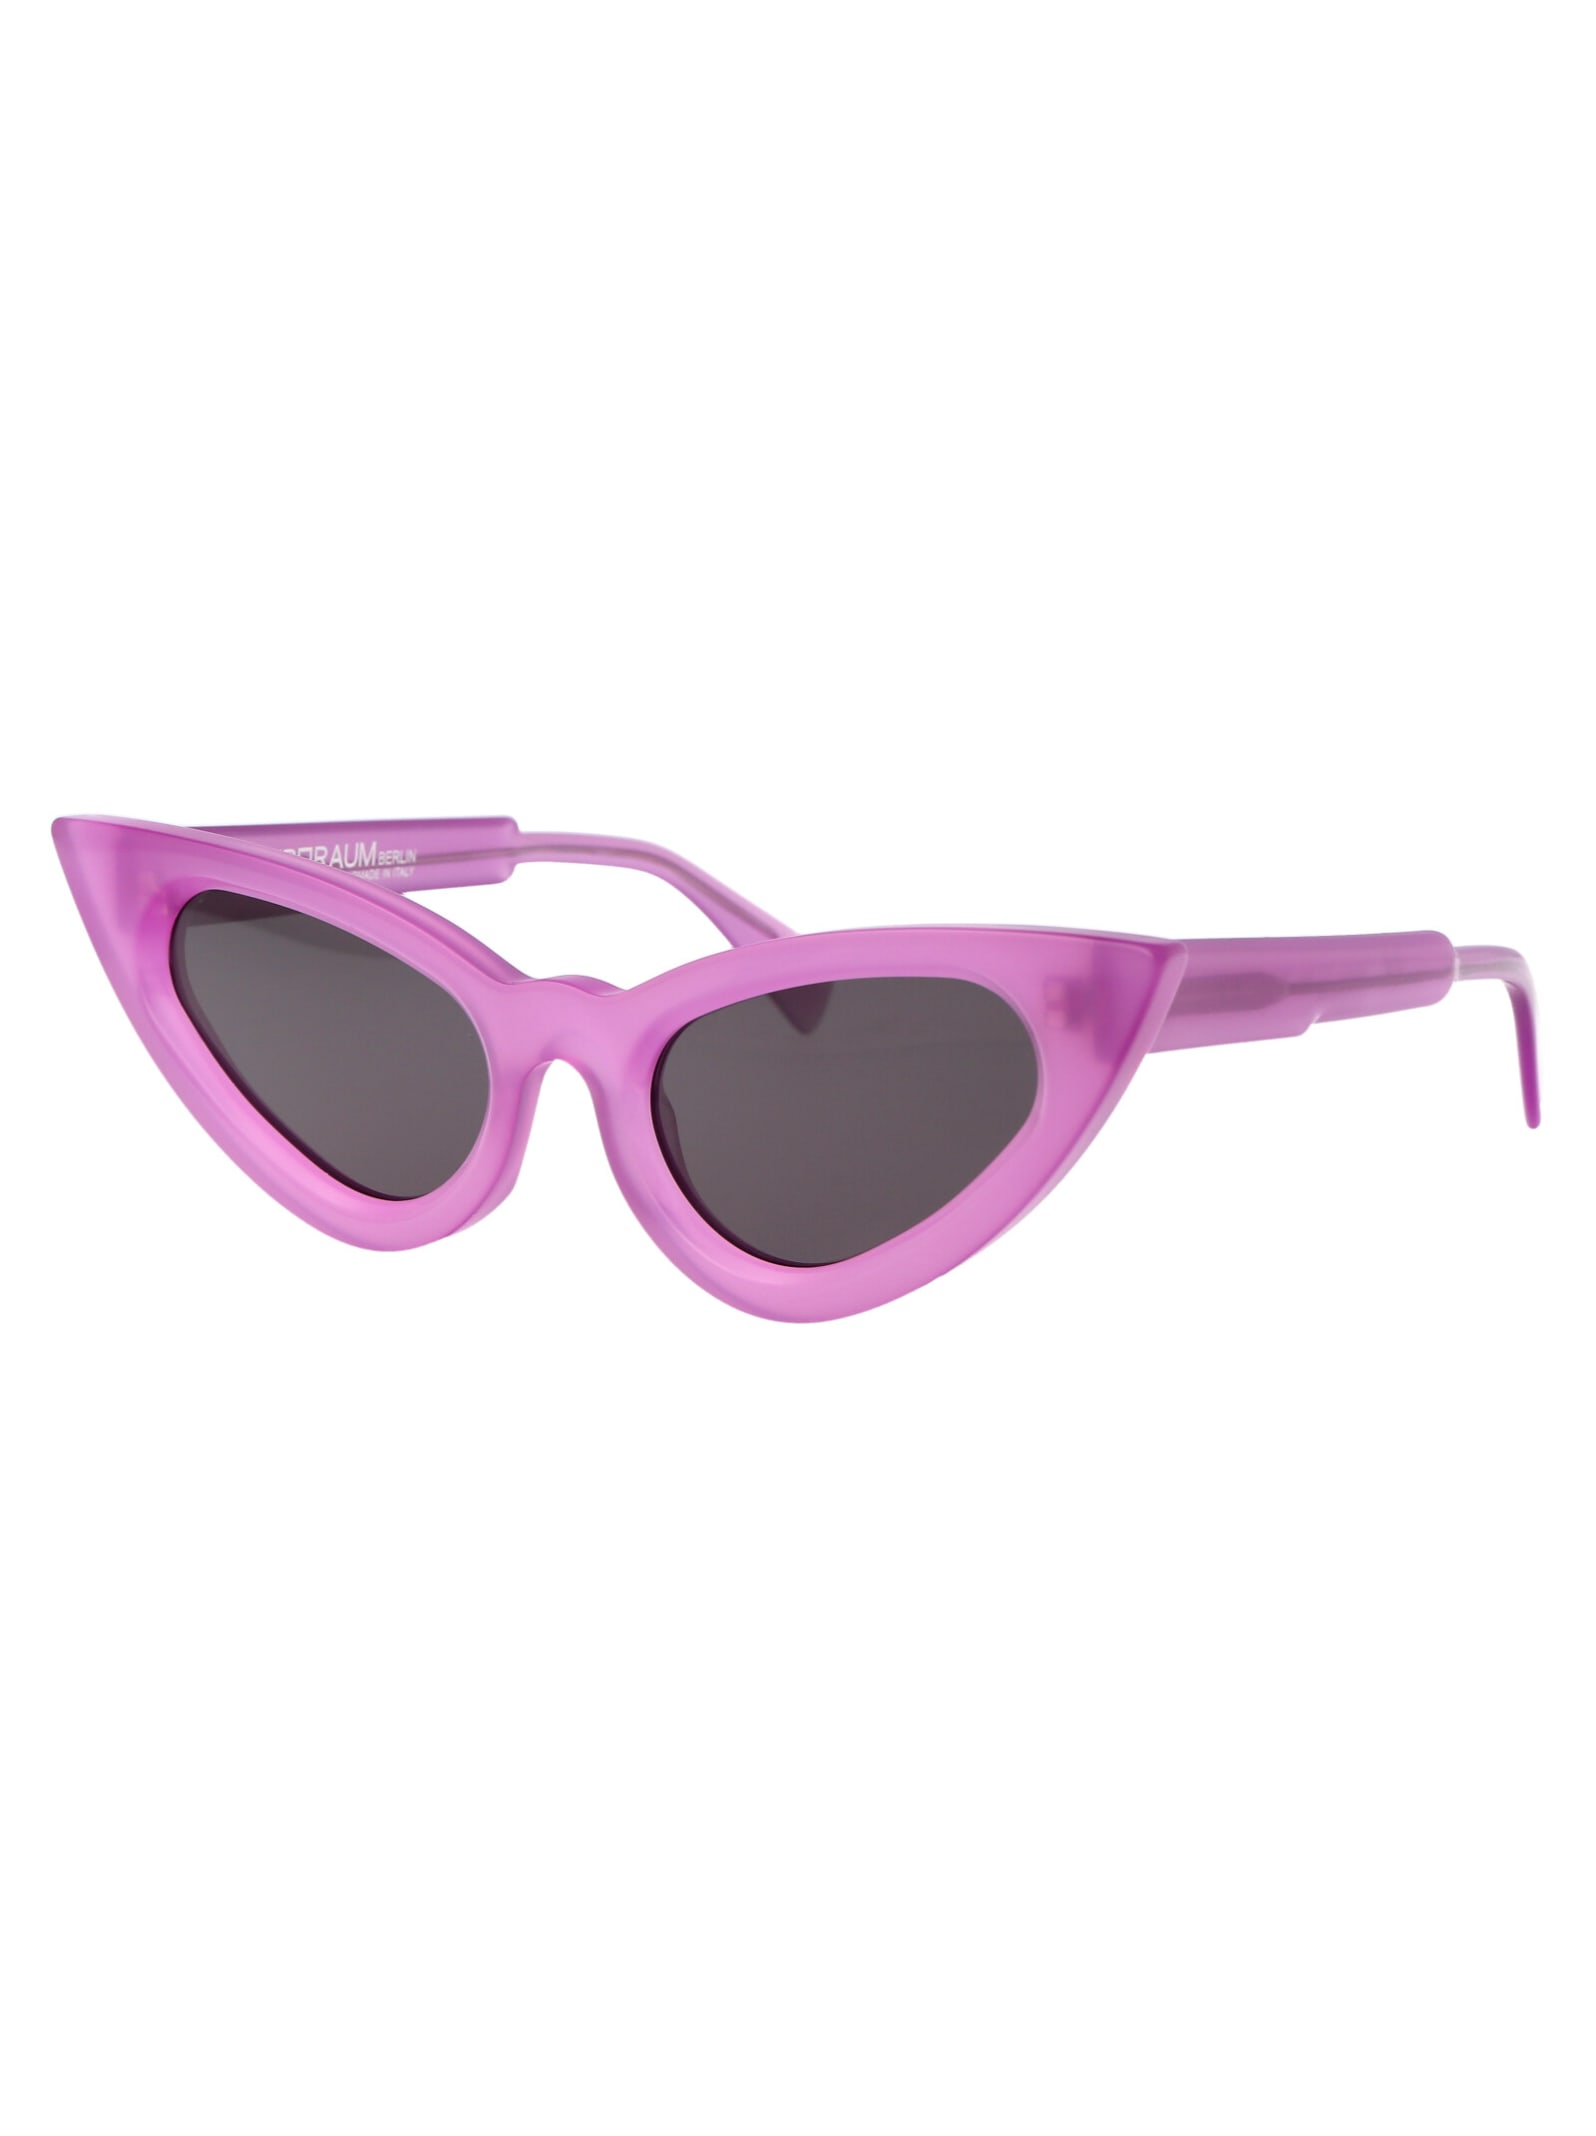 Shop Kuboraum Maske Y3 Sunglasses In Mau 2grey